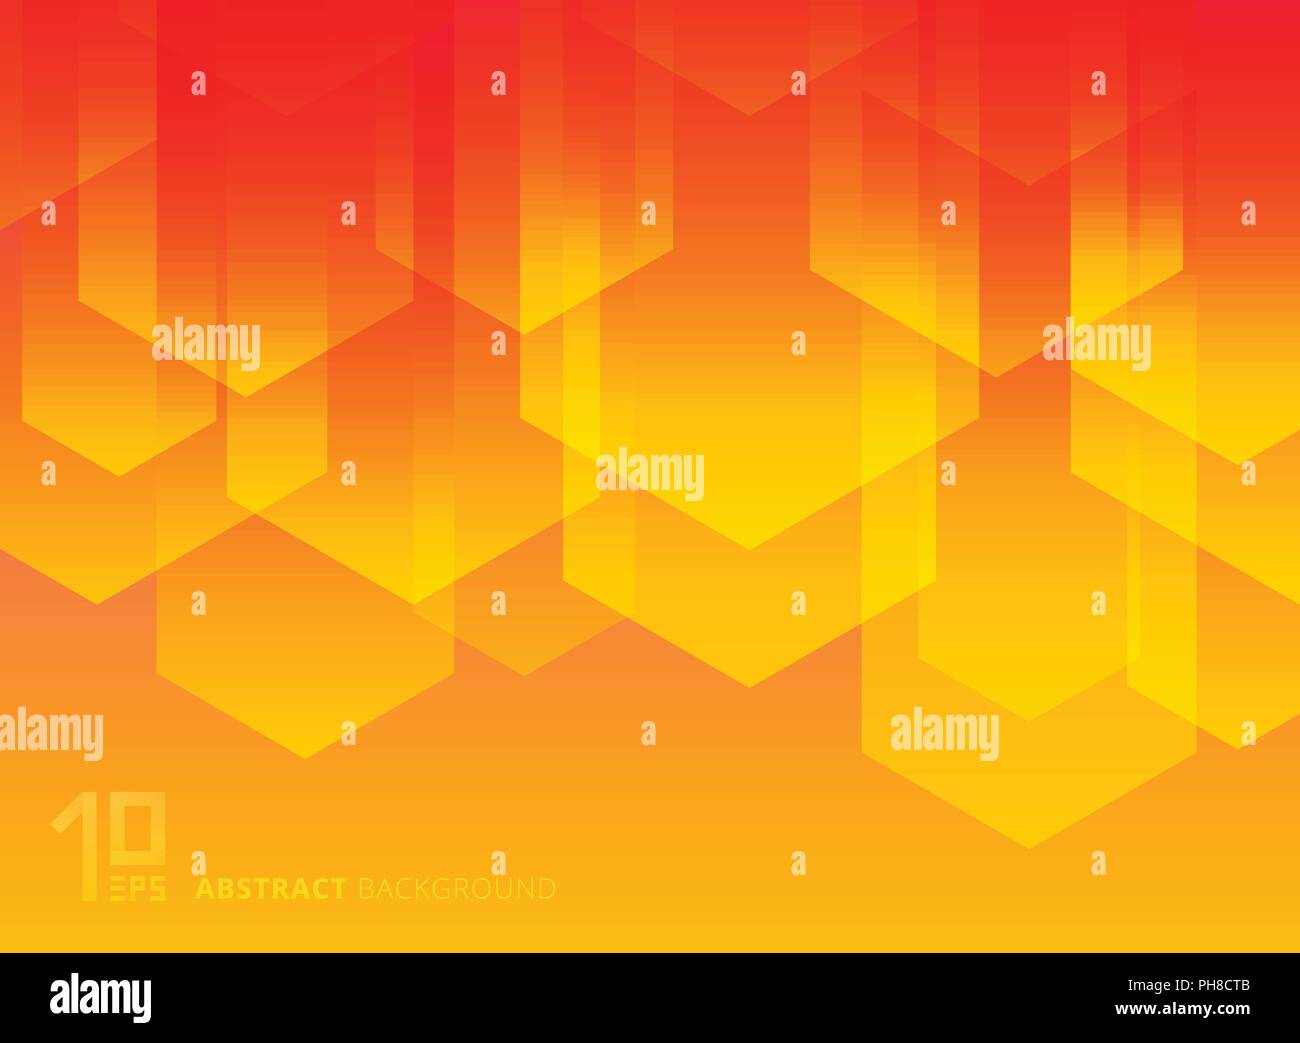 Abstrakte gelbe und rote Dreiecke einfache geometrische Formen mit trendigen Farbverläufen Zusammensetzung Hintergrund. Vector Illustration Stock Vektor